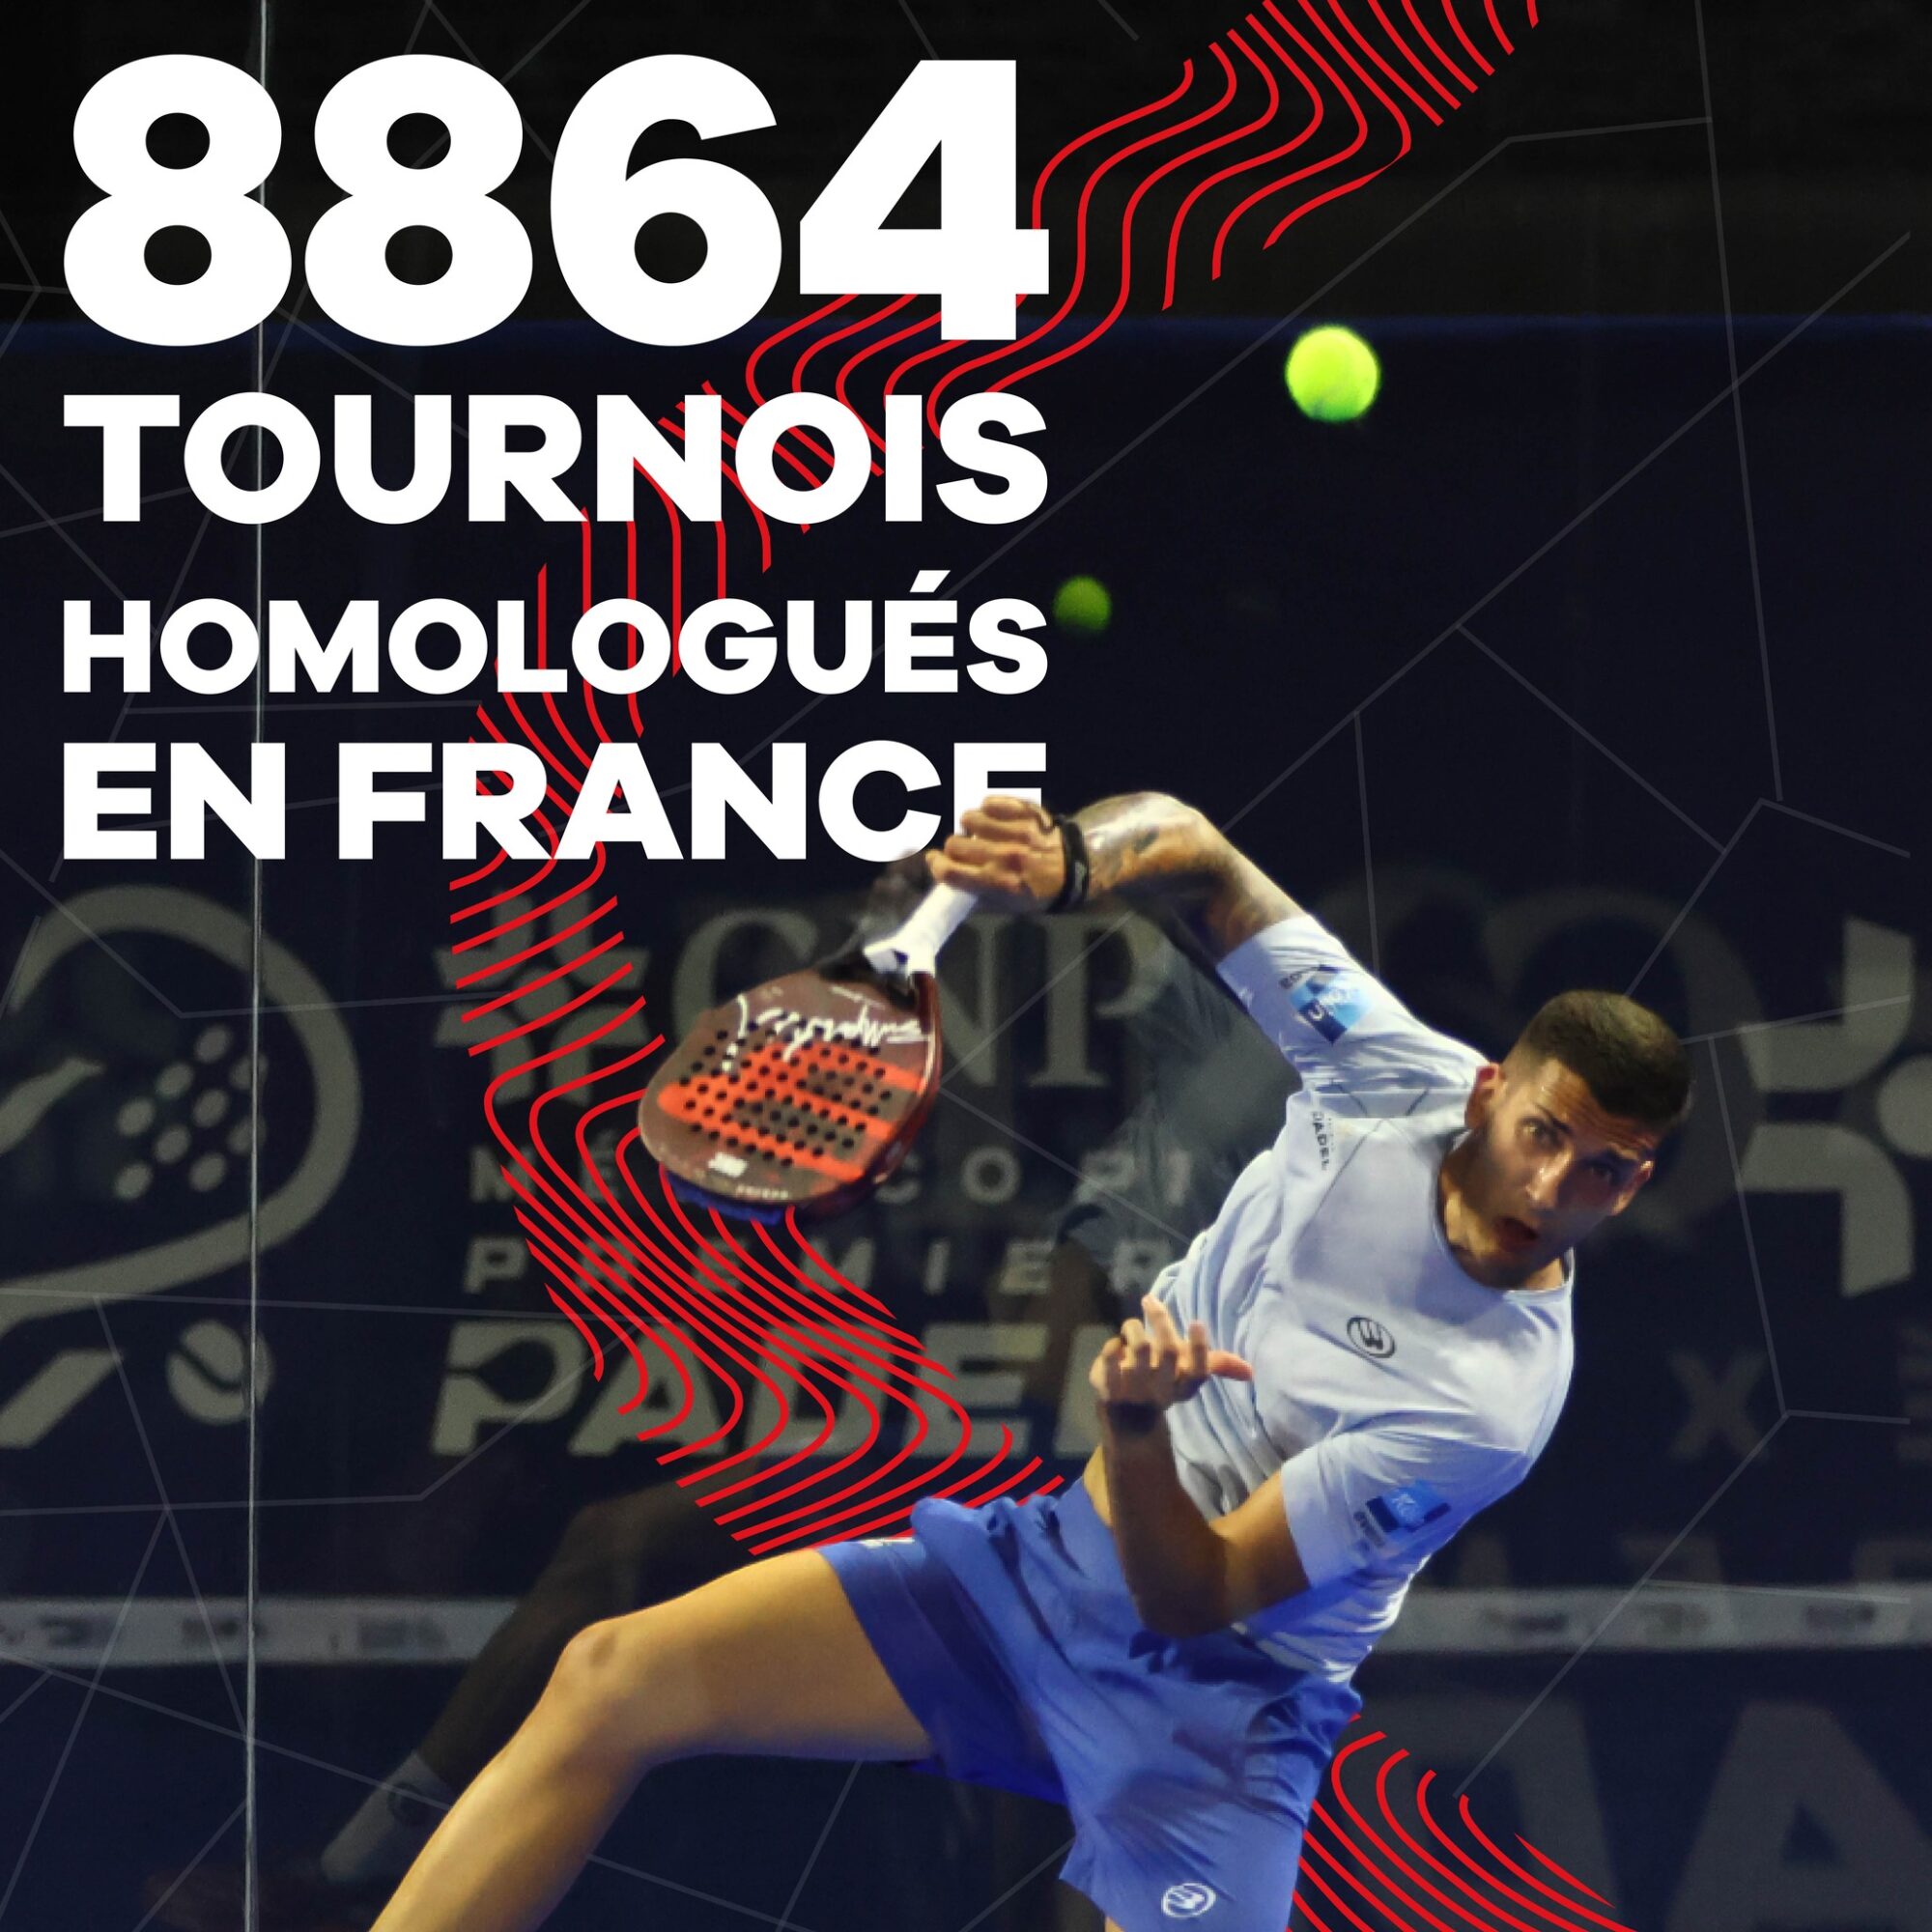 8864 torneos aprobados en Francia